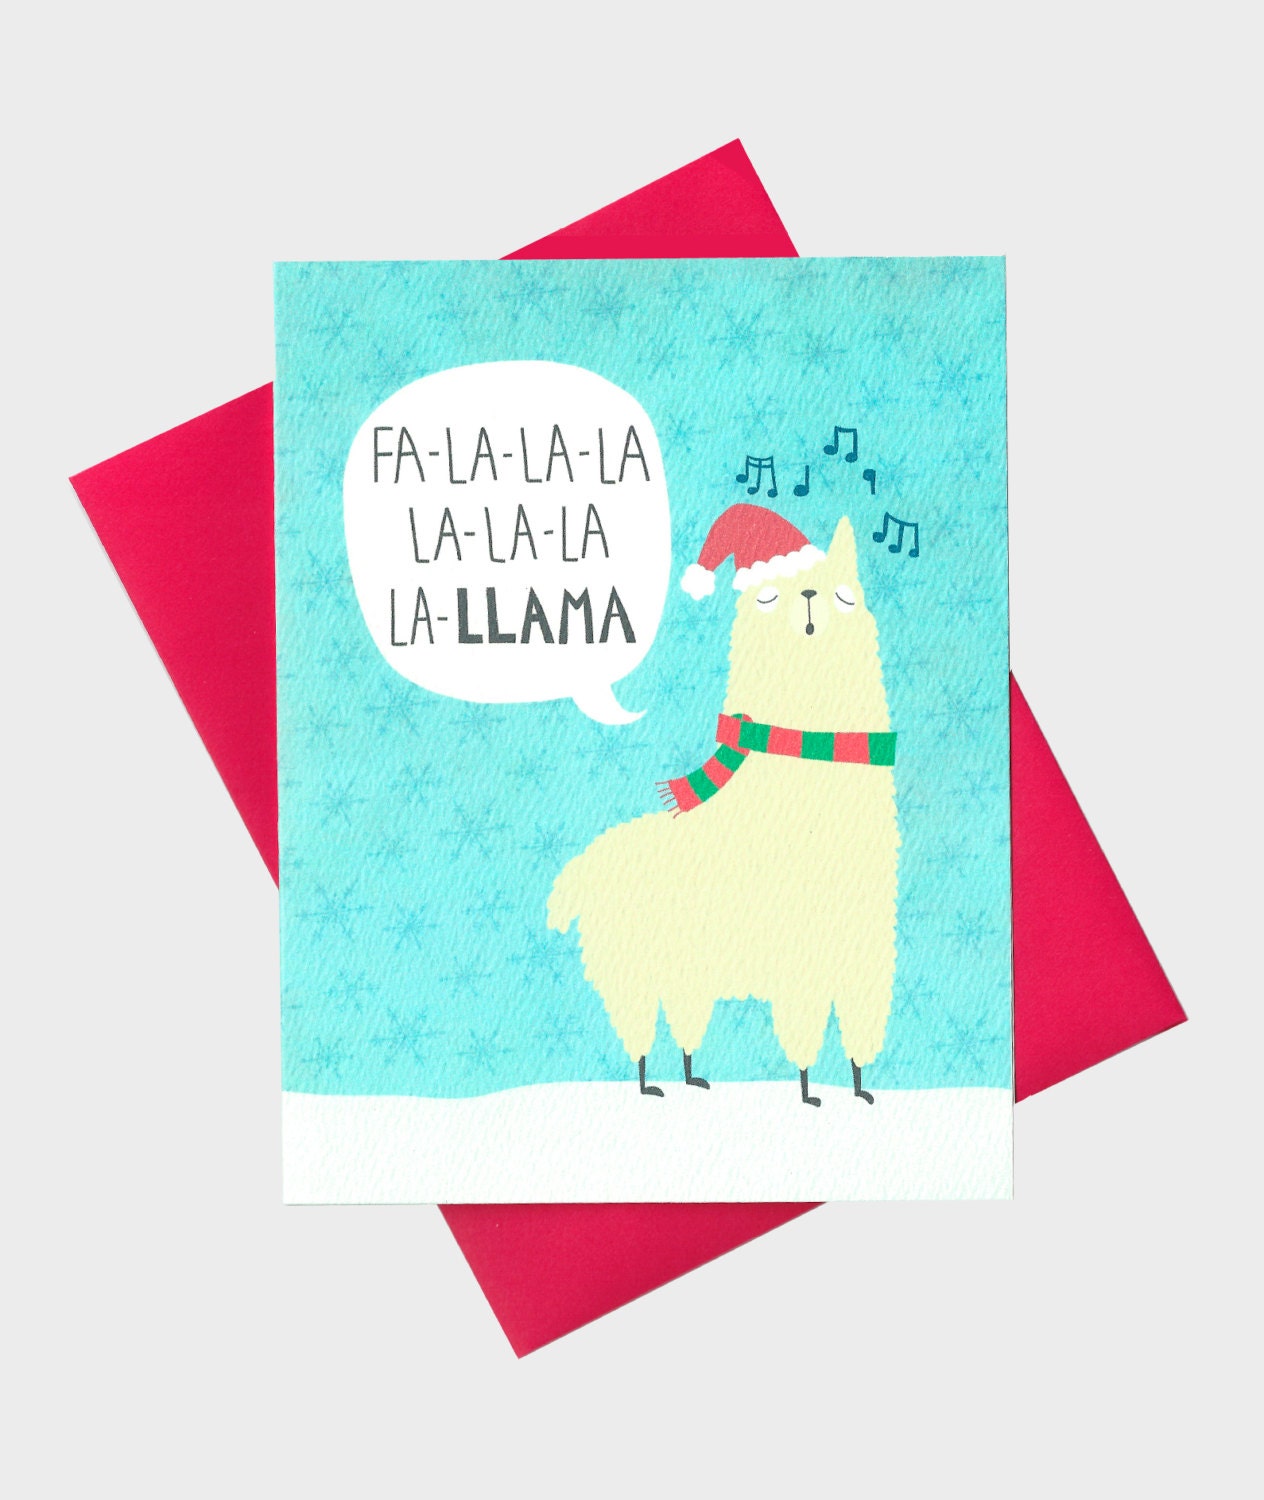 llama on holiday